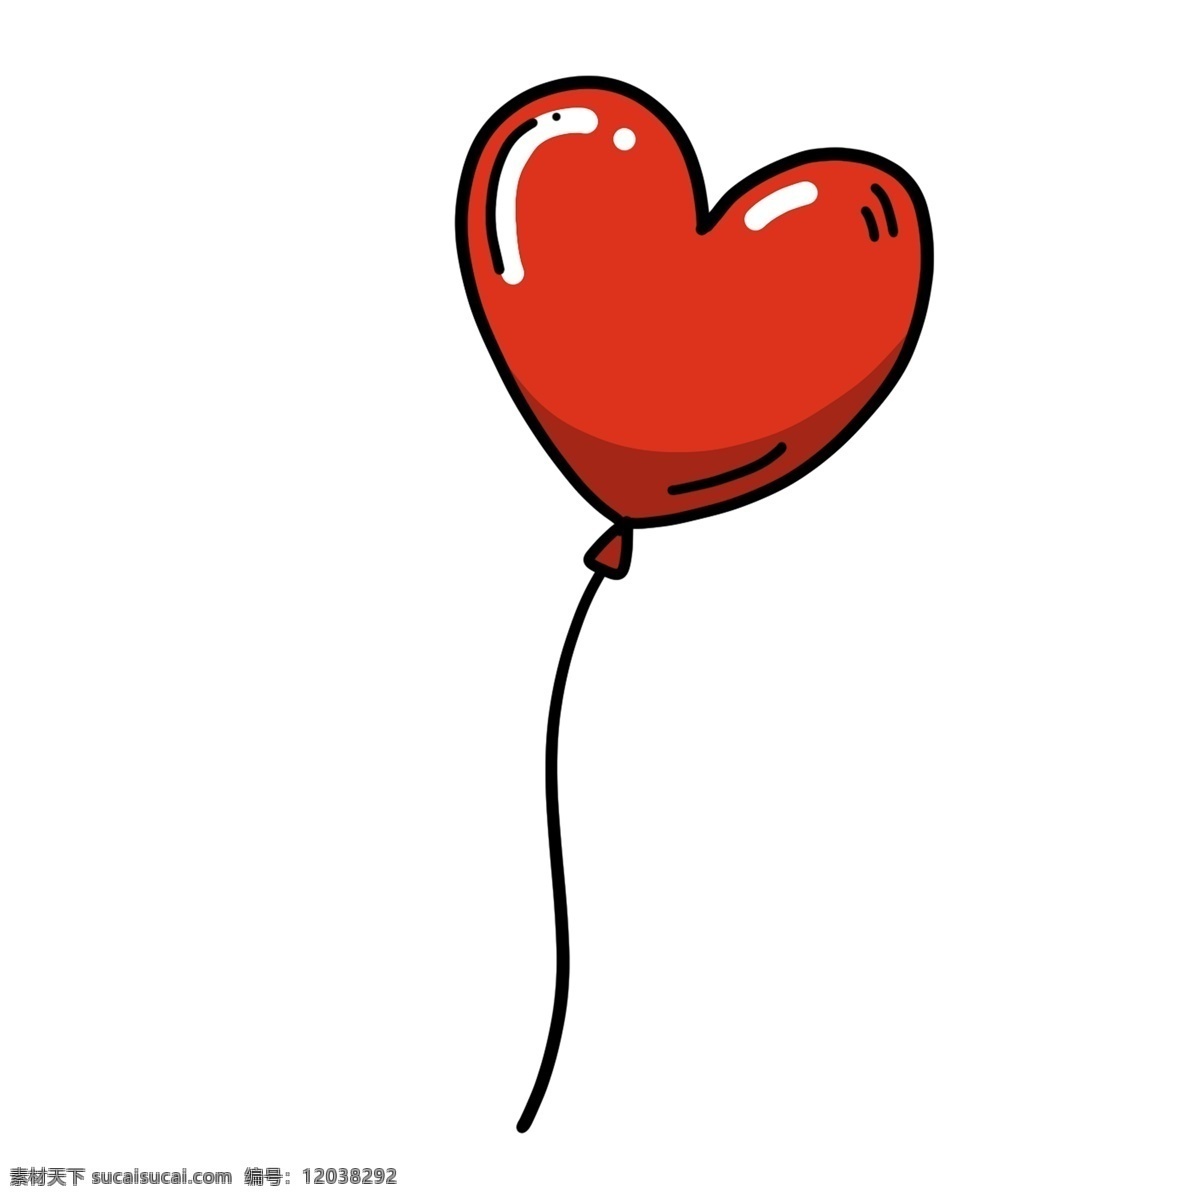 心形 红色 气球 卡通 透明 装饰图案 喜庆 节日元素 活动素材 手绘素材 可爱